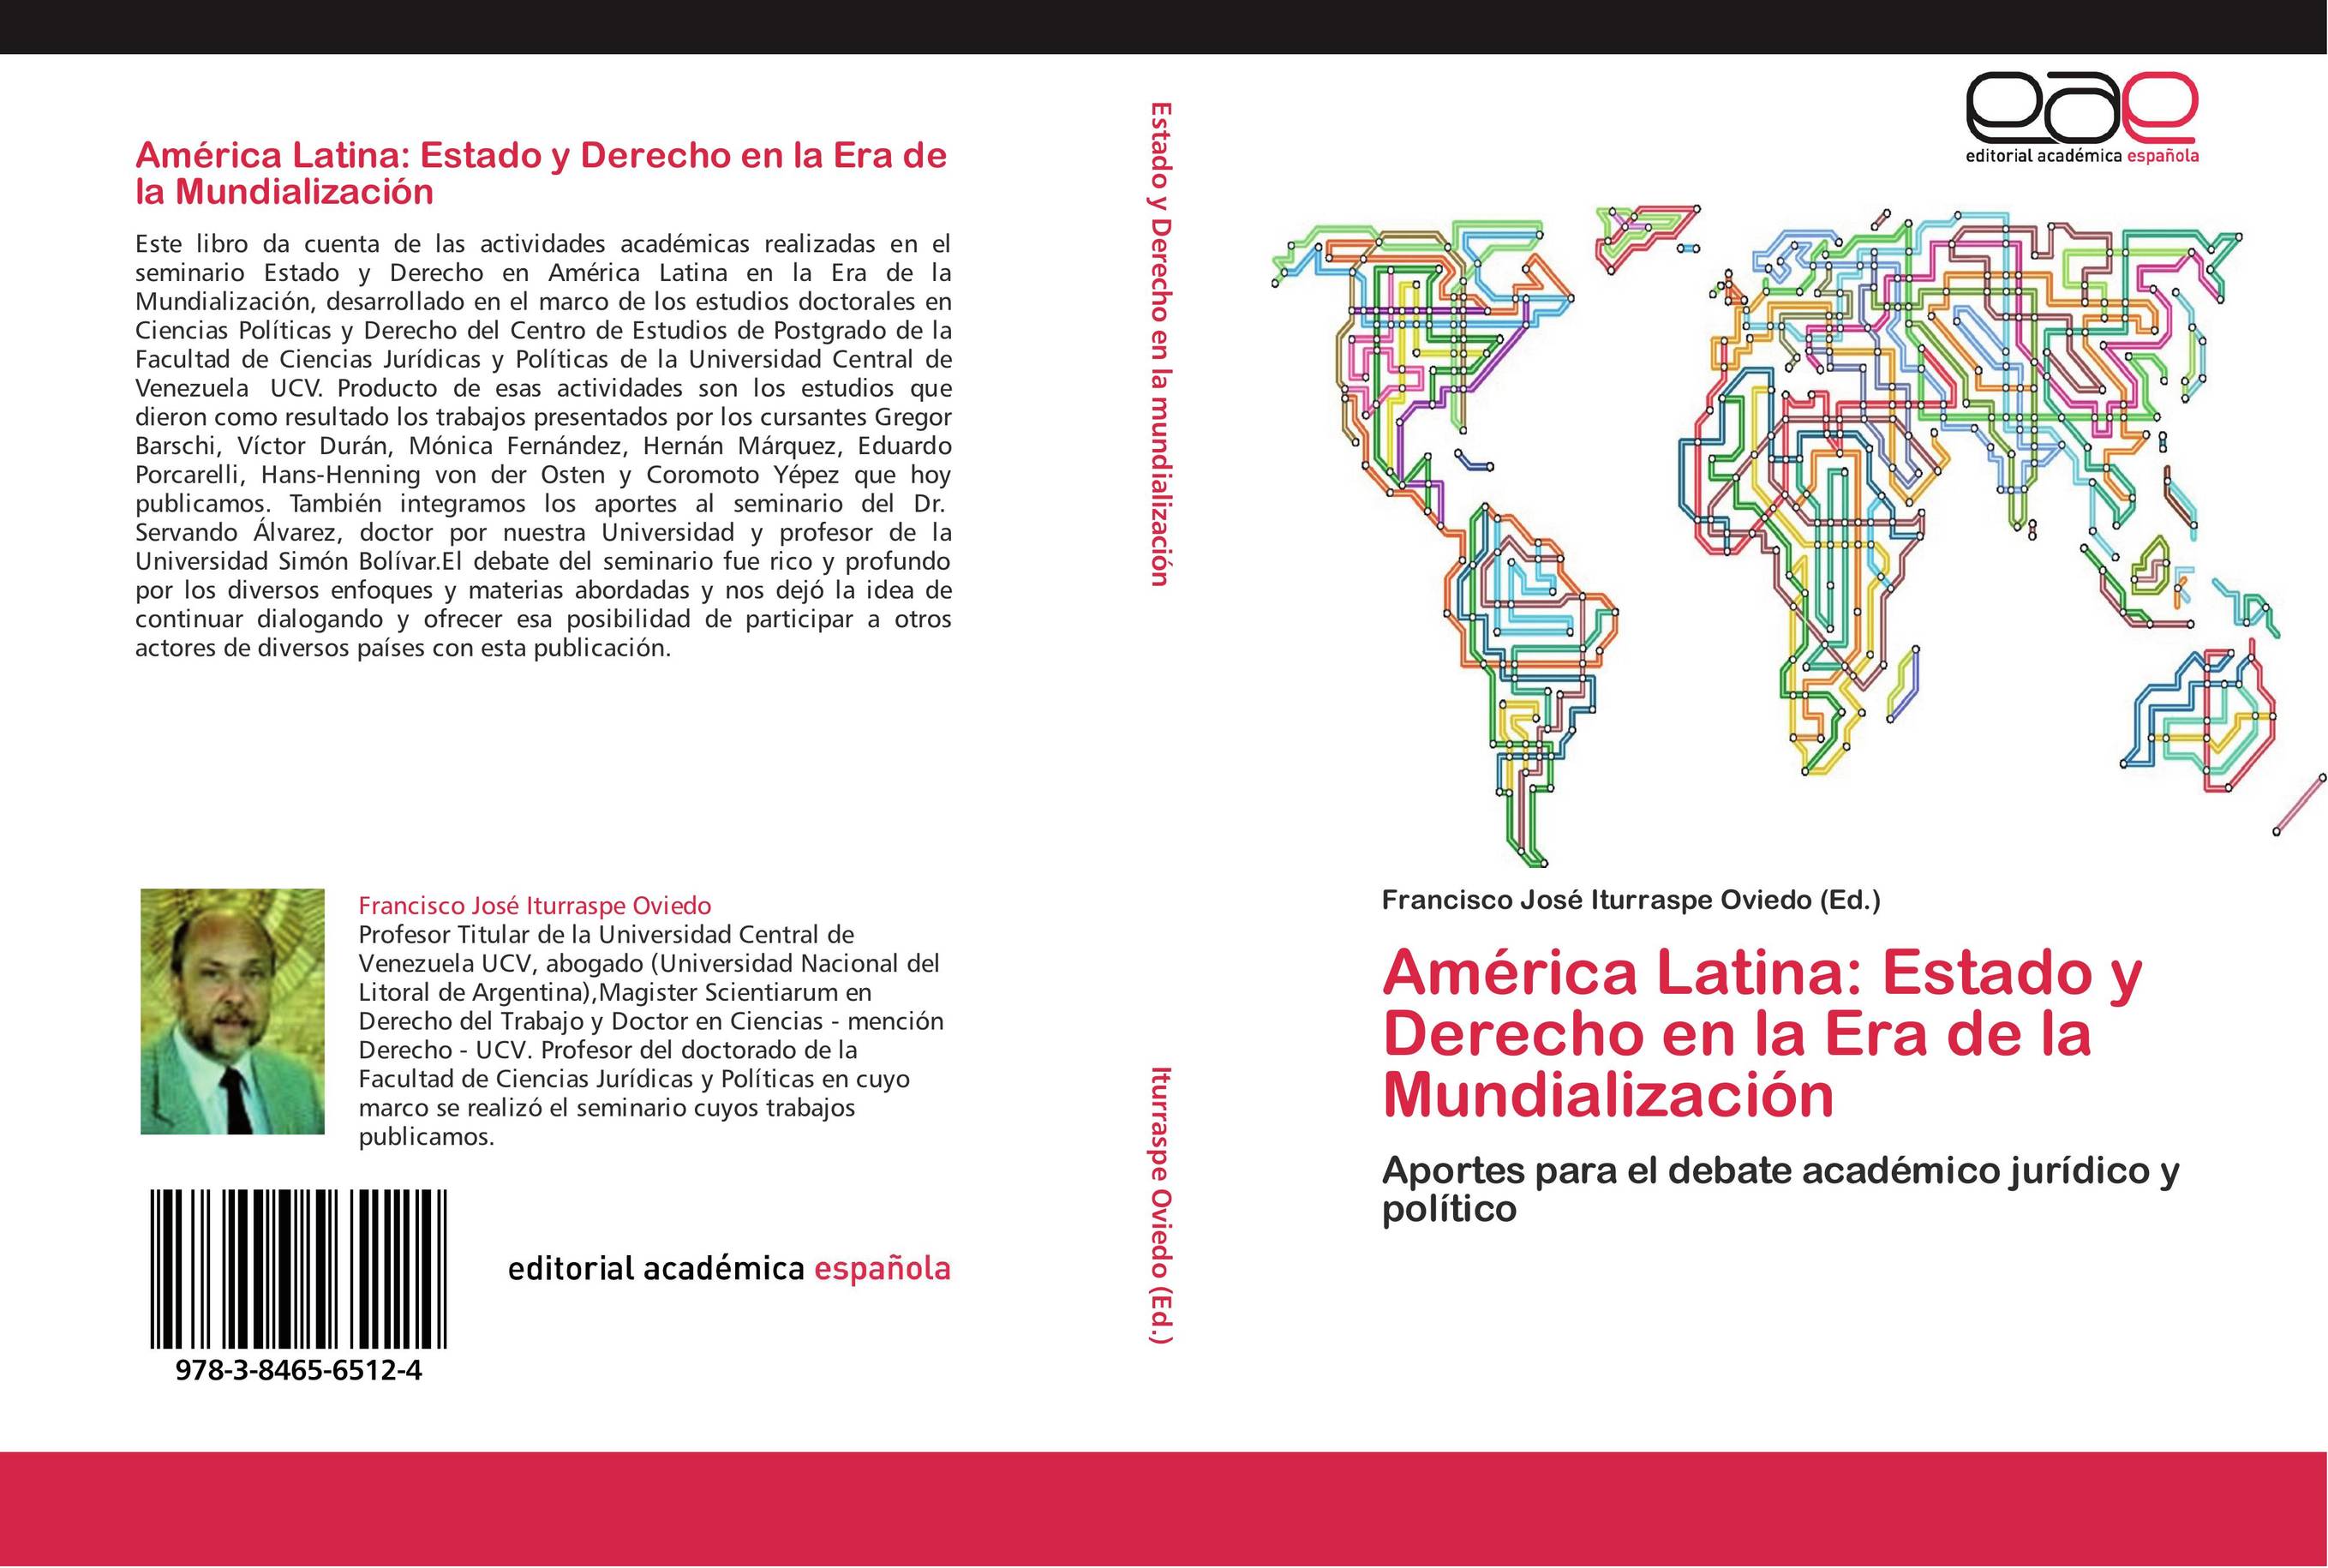 América Latina: Estado y Derecho en la Era de la Mundialización